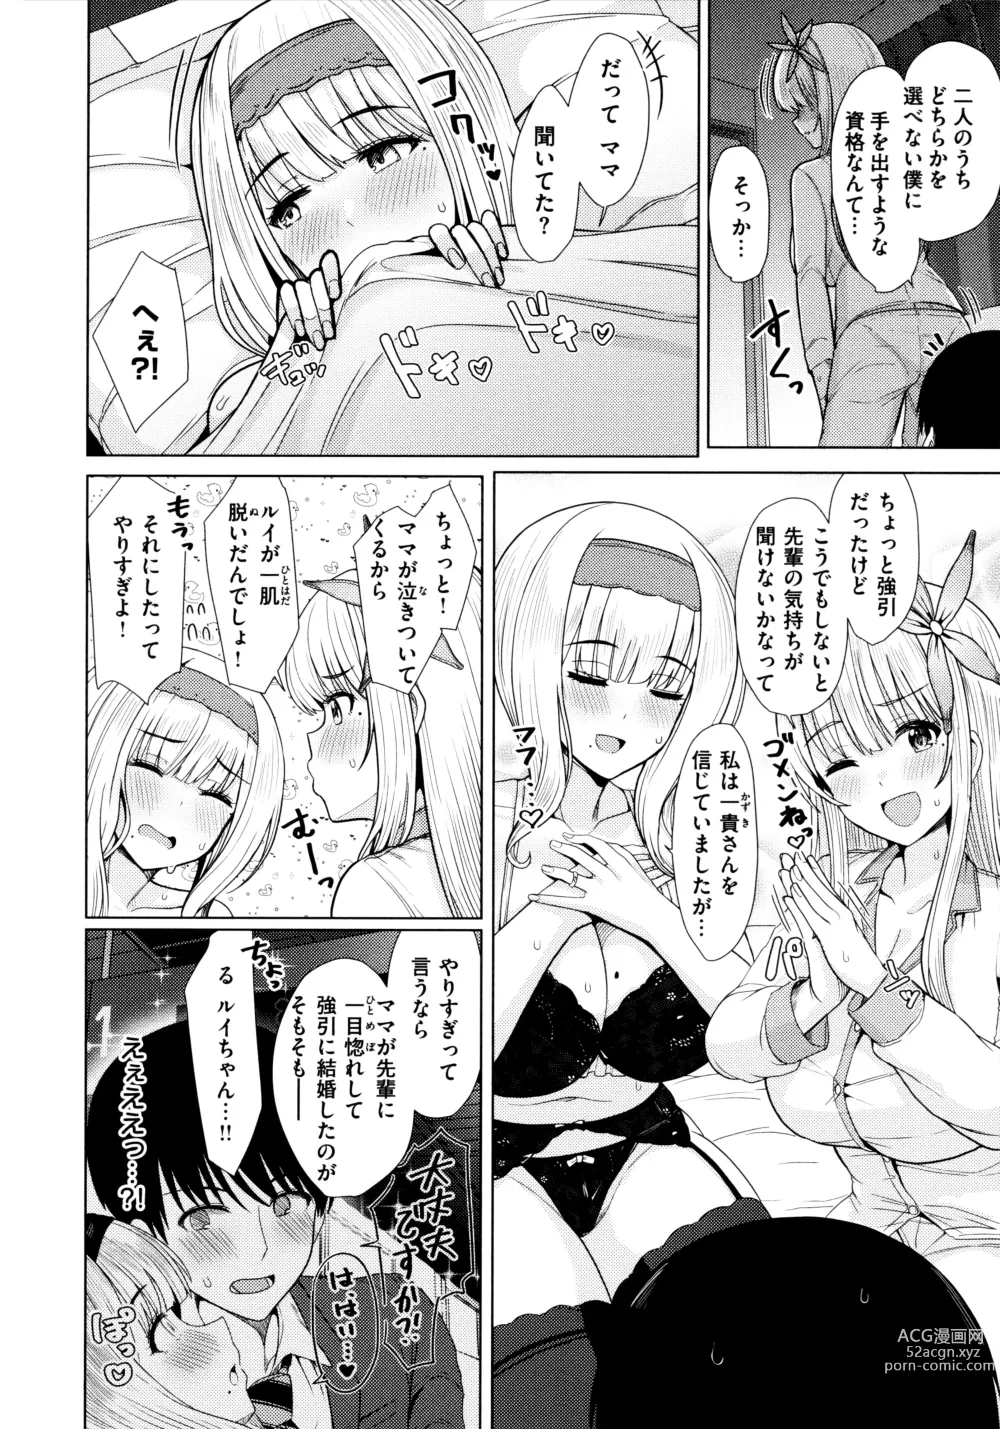 Page 12 of manga Nukunuku Seikatsu - Life Full of Sex + Melonbooks Kounyu Tokuten + Toranoana Kounyu Tokuten